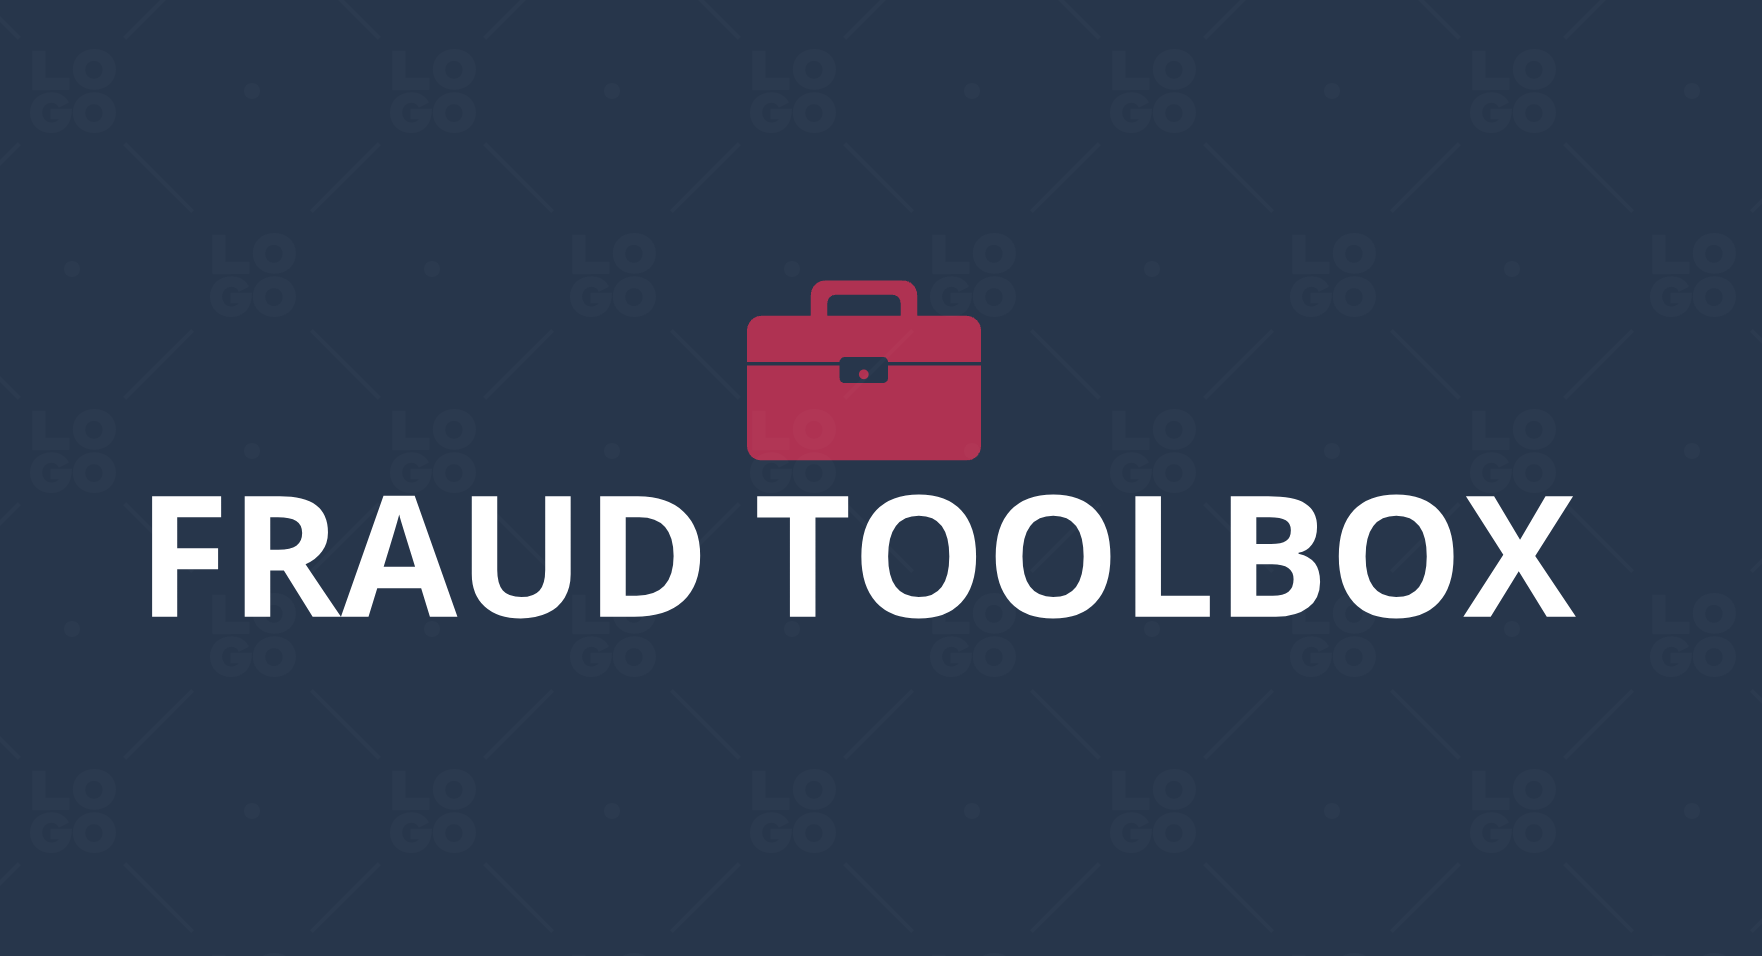 FraudToolbox.com